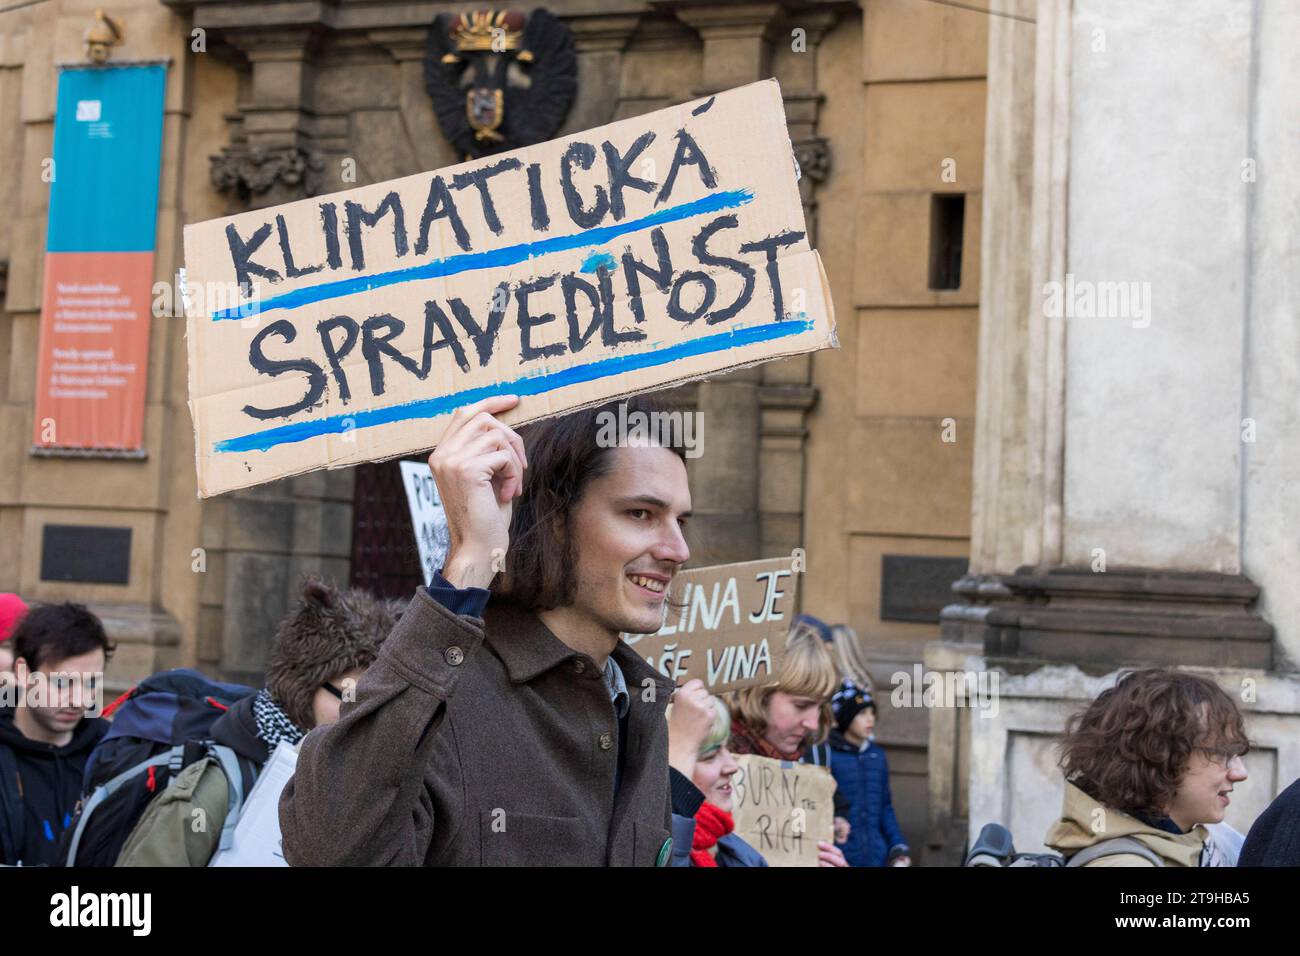 Manifestation de la Journée des étudiants, manifestation contre le changement climatique, Prague, République tchèque, Europe Banque D'Images